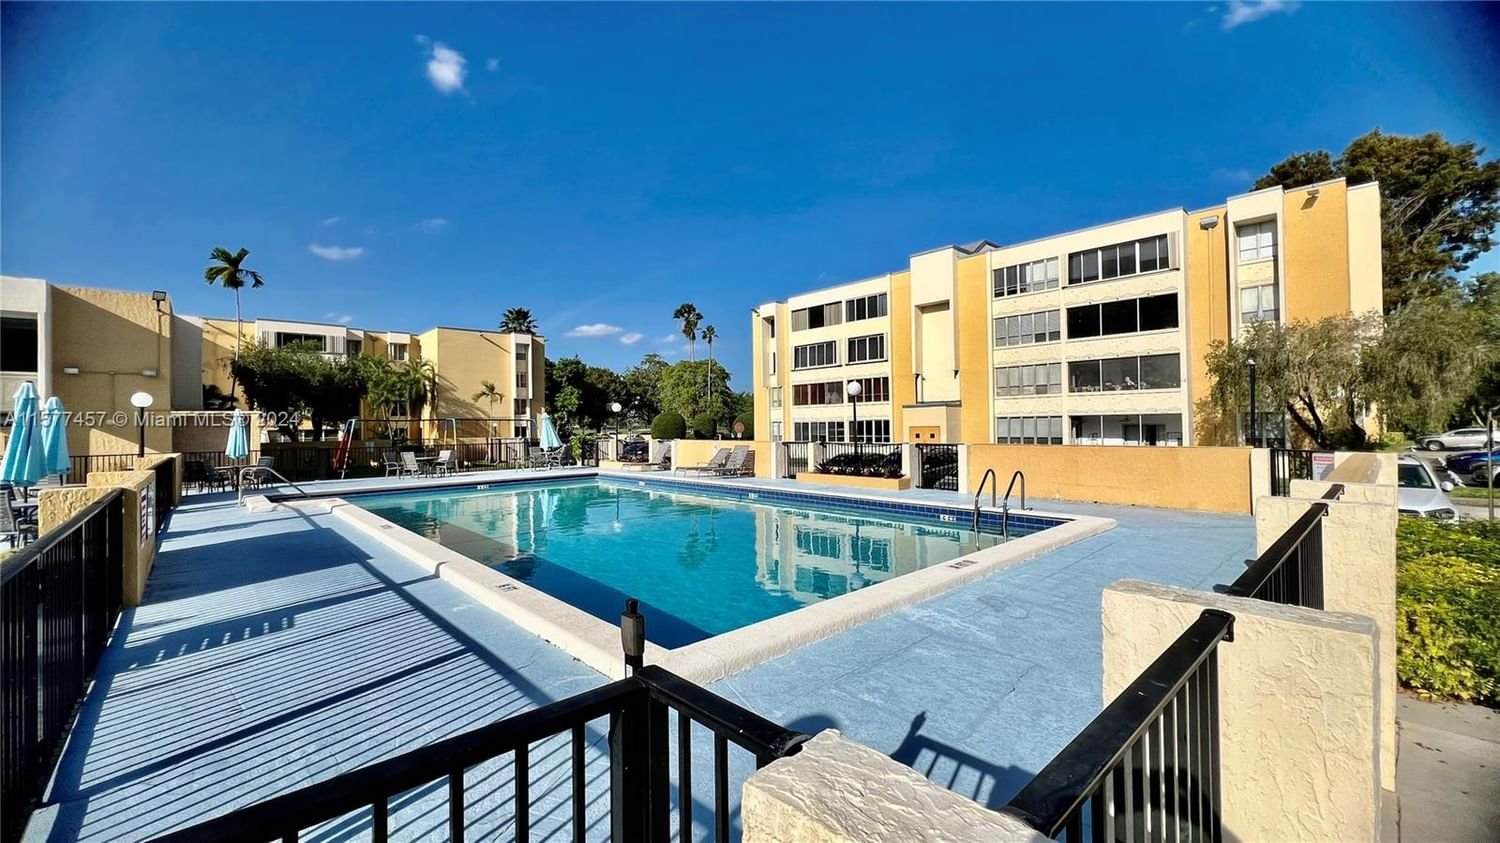 Real estate property located at 6901 147th Ave #2E, Miami-Dade County, SOVEREIGNS CONDO, Miami, FL